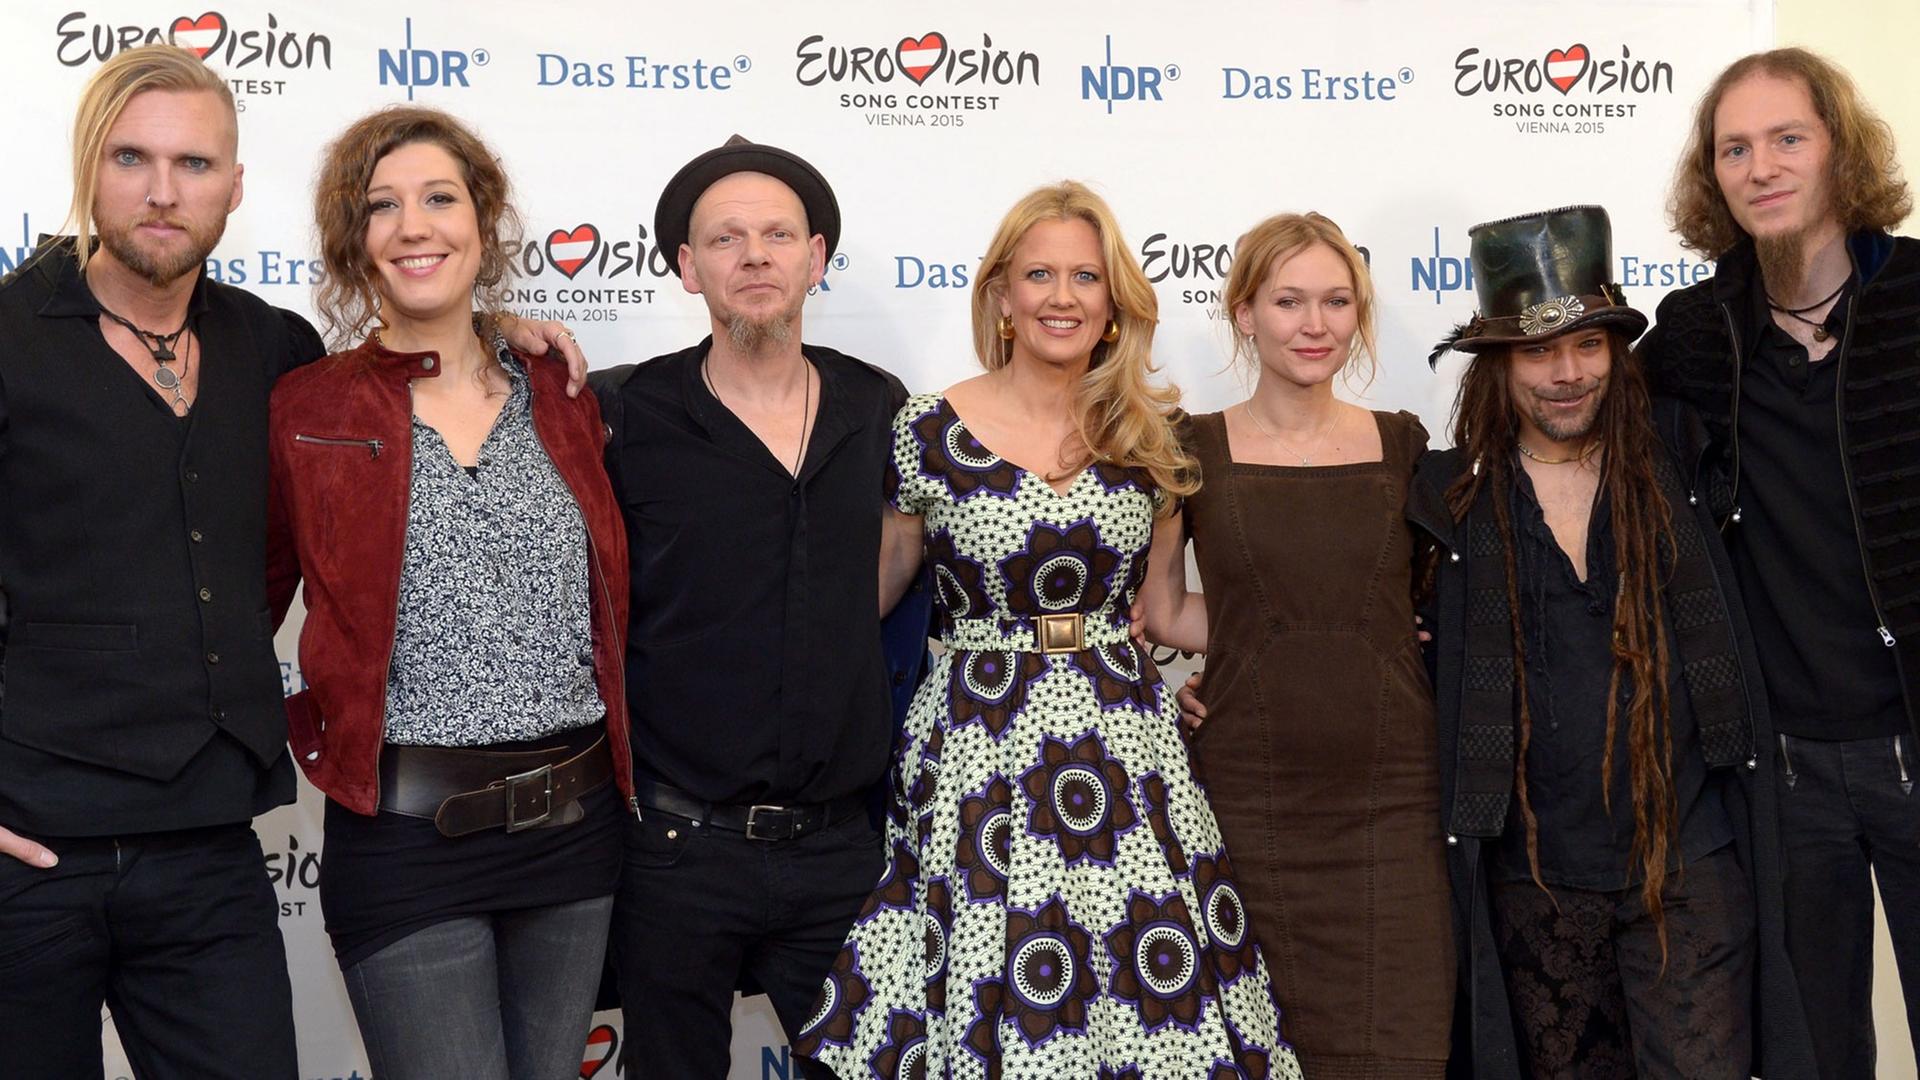 Die Gruppe "Faun" am 4. März 2015 in Hannover